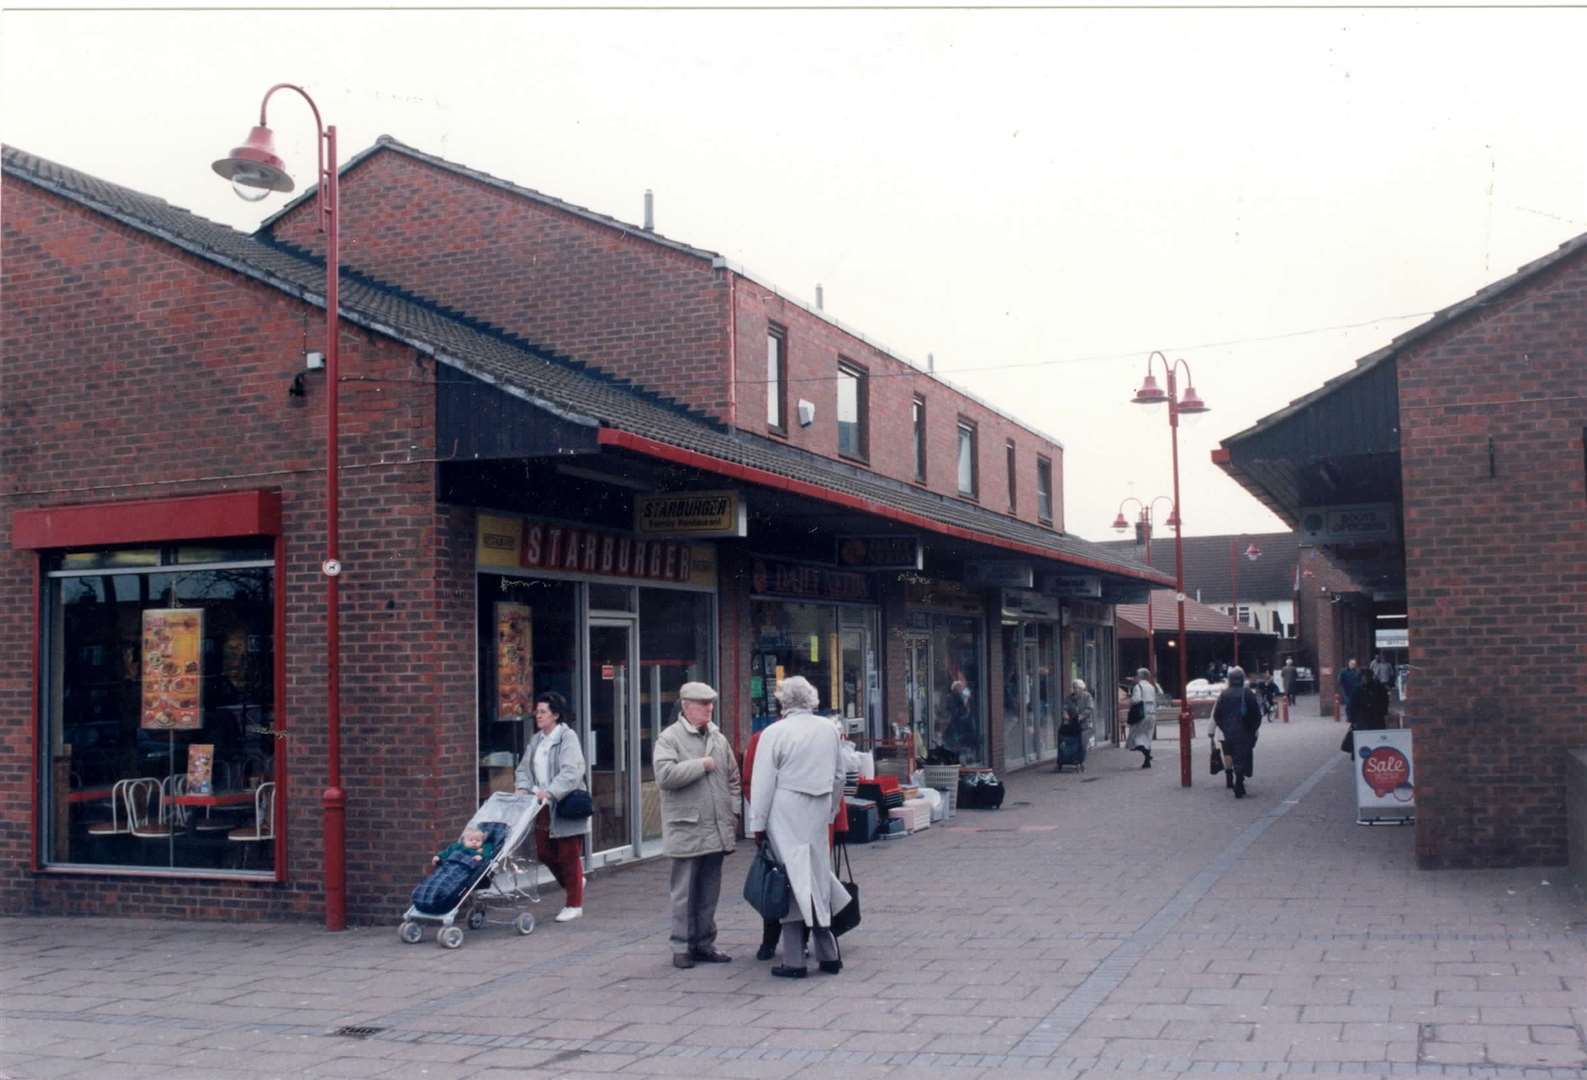 Rainham Shopping Centre in 1997